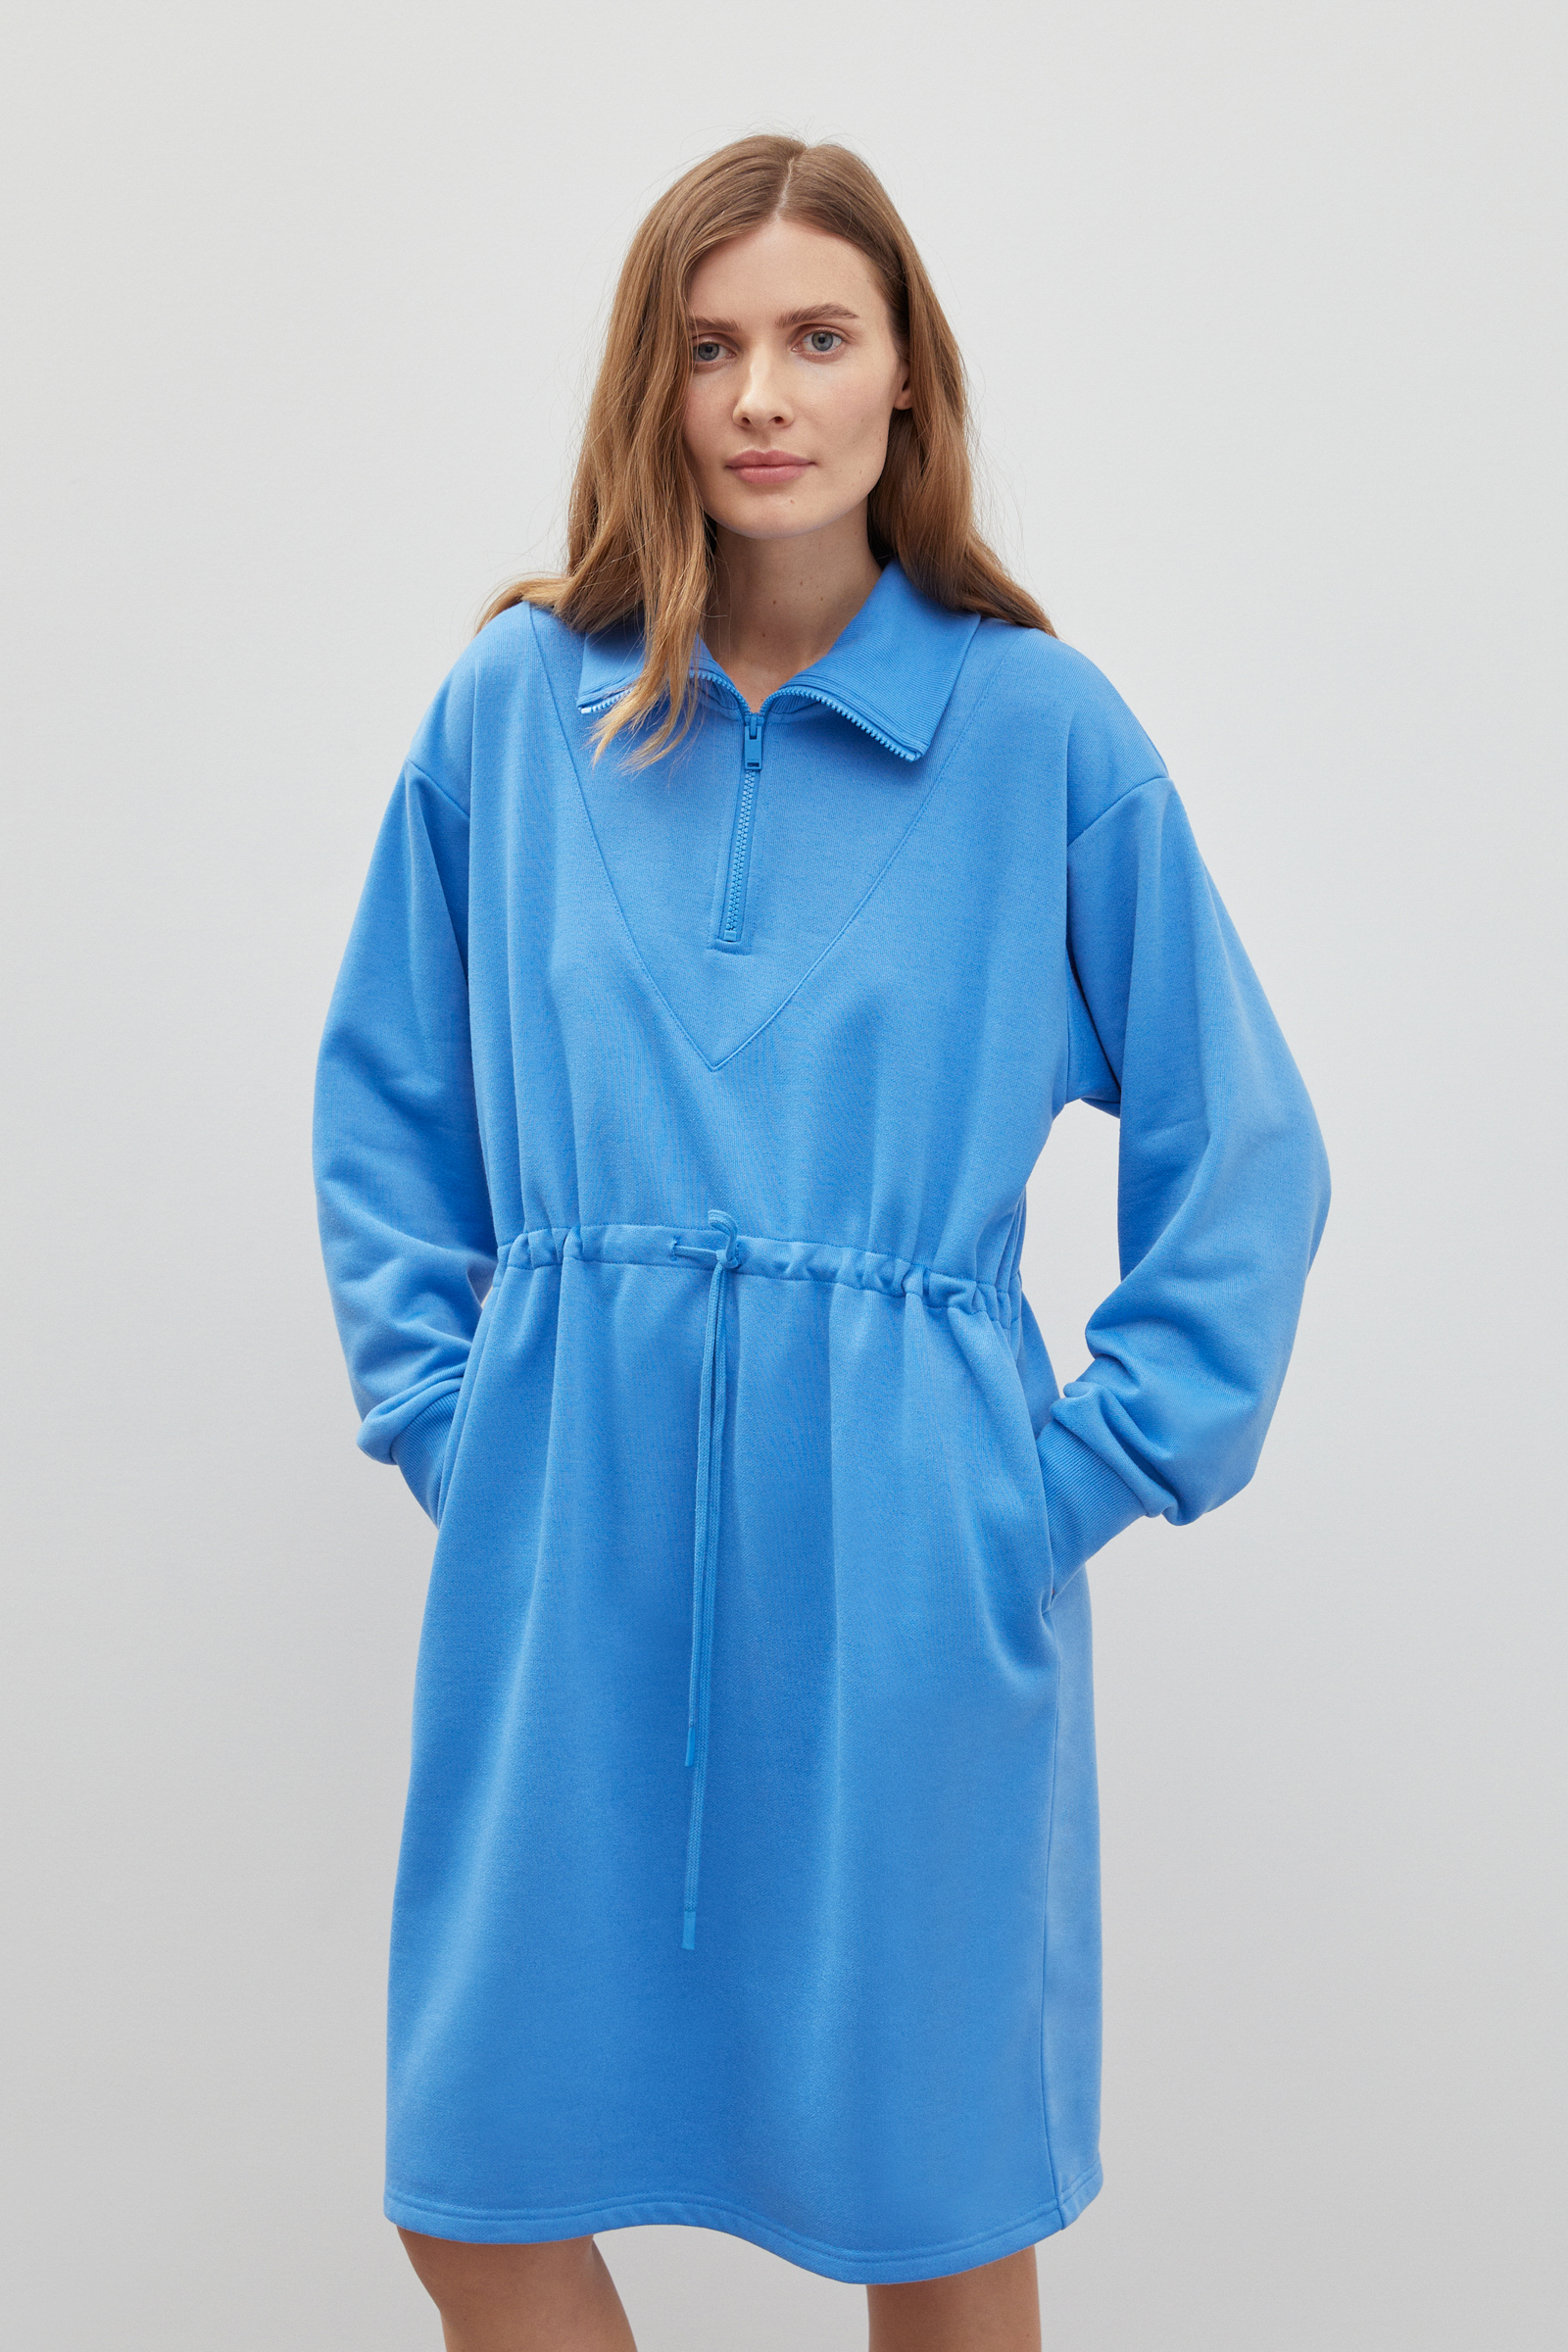 Платье женское Finn Flare FBD110188 голубое XL